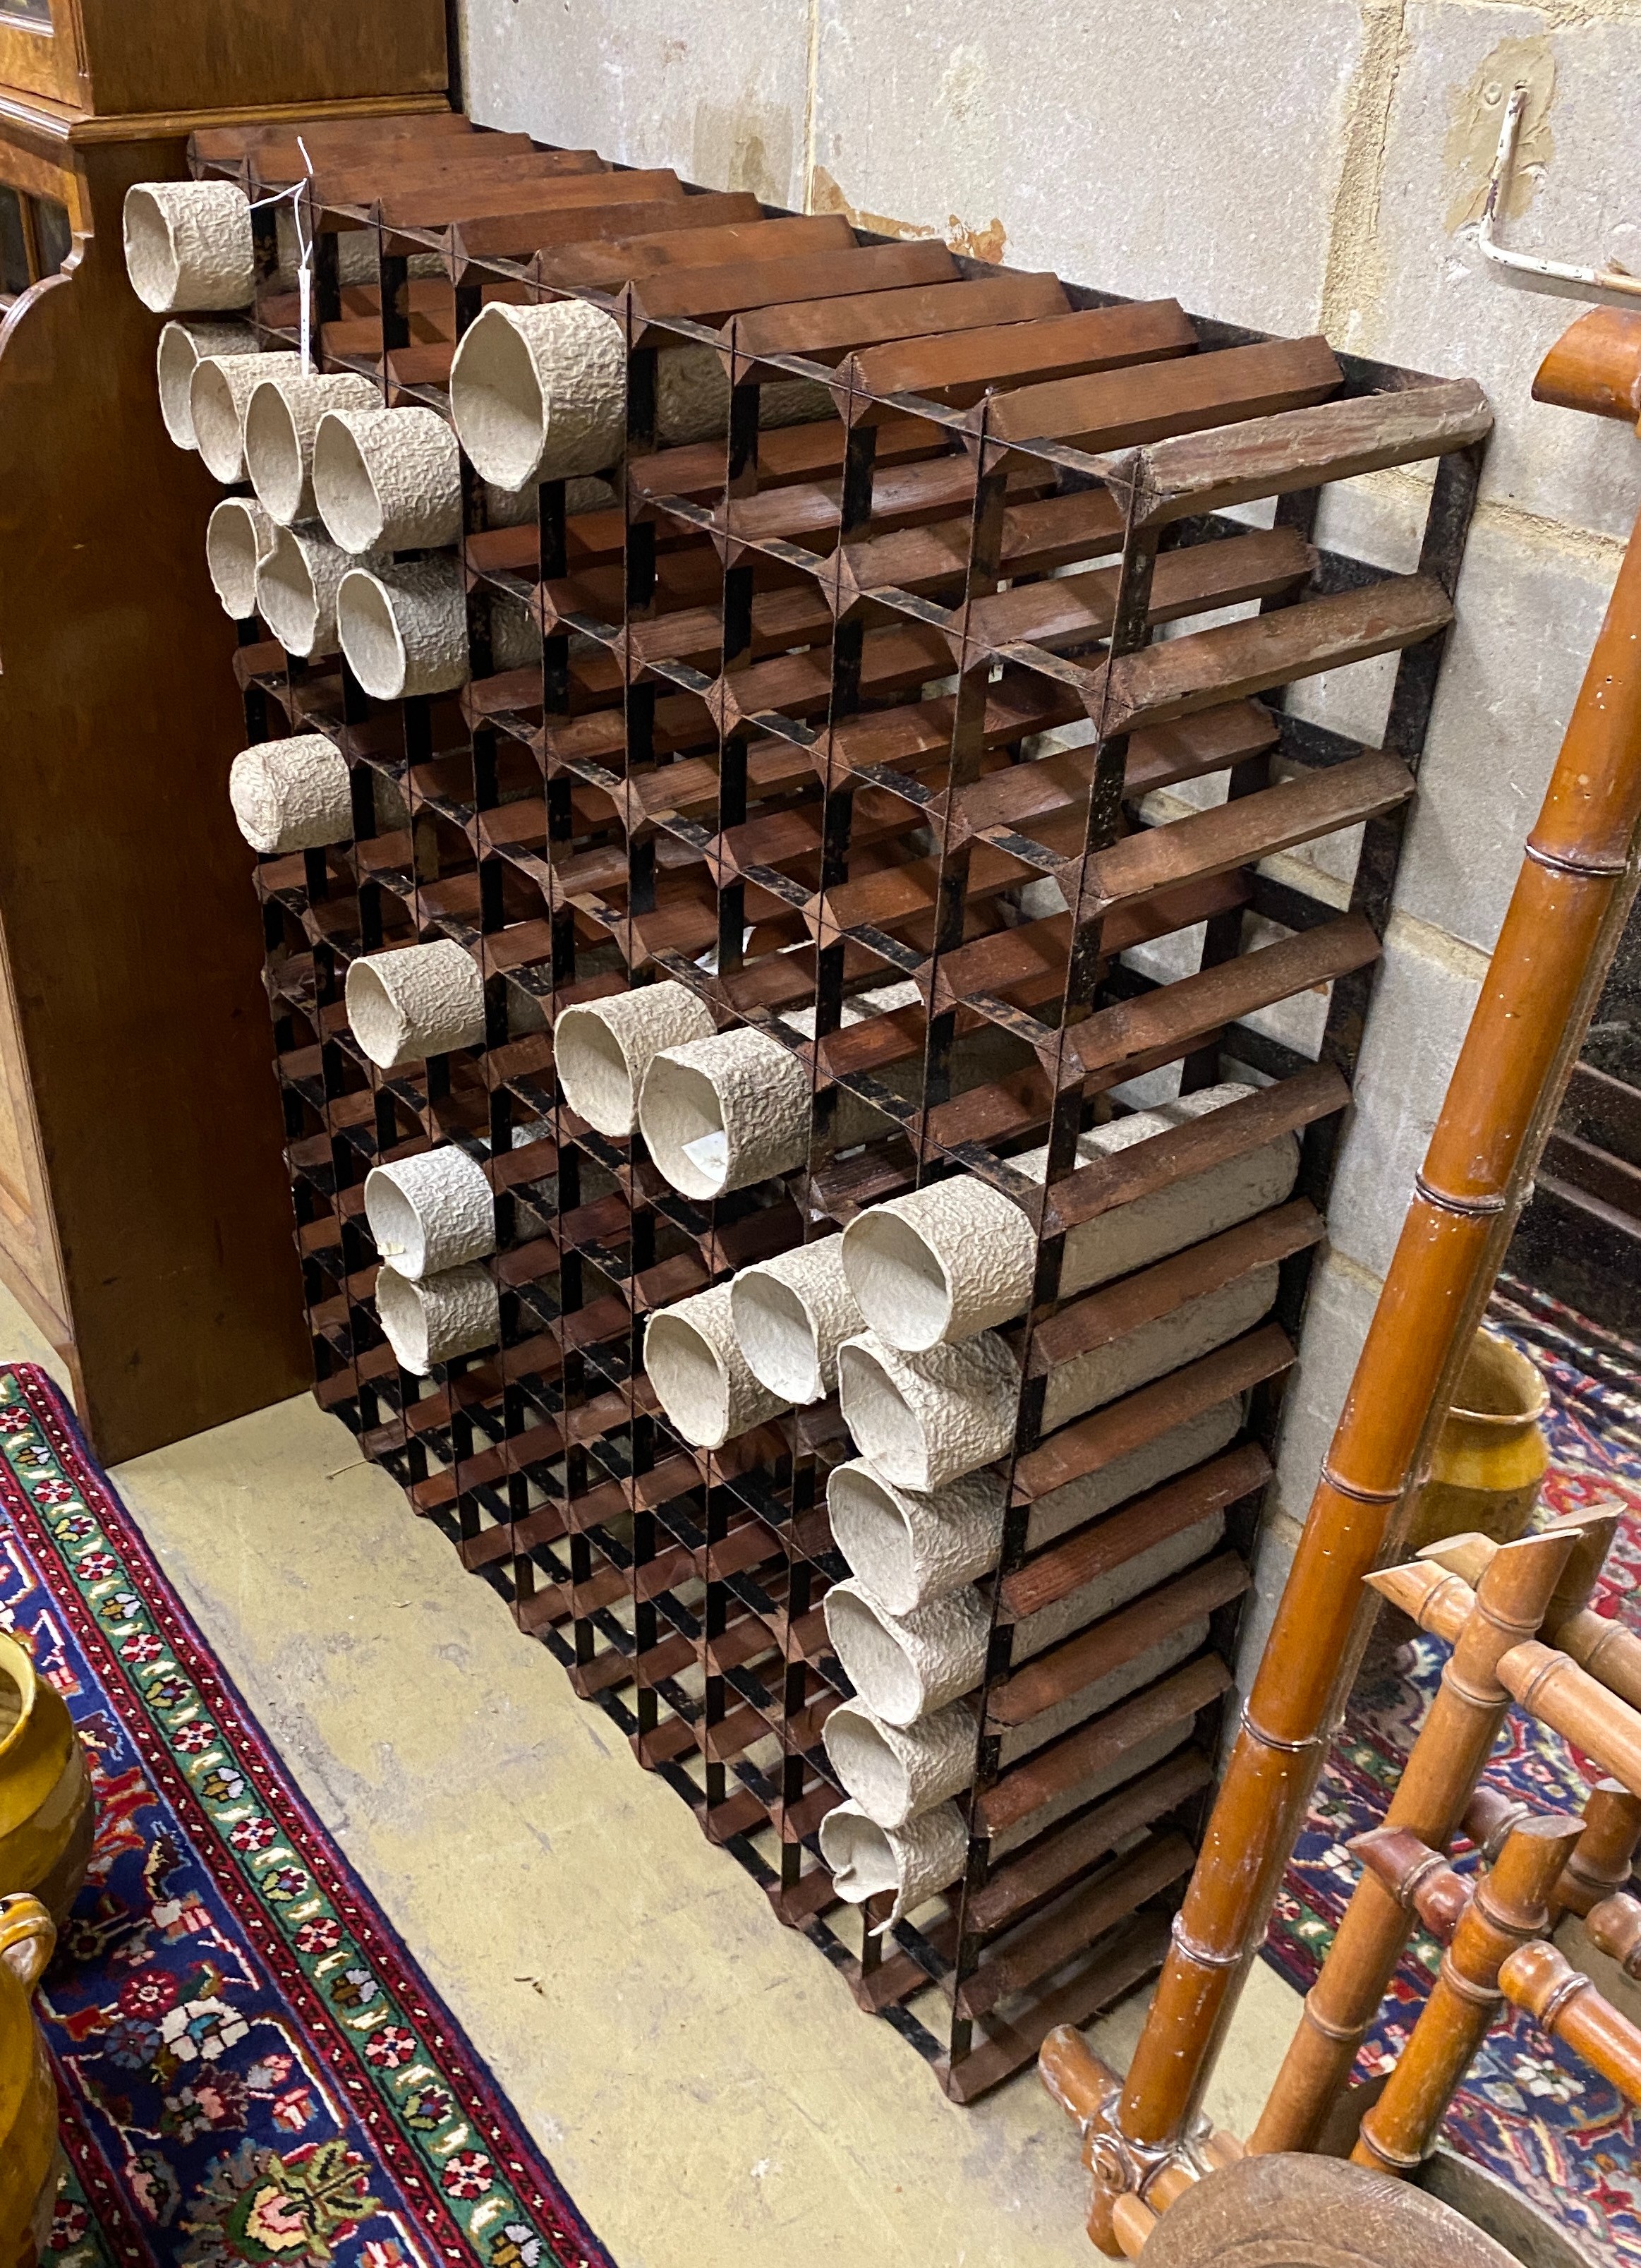 A 120 bottle wine rack, width 100cm, height 120cm